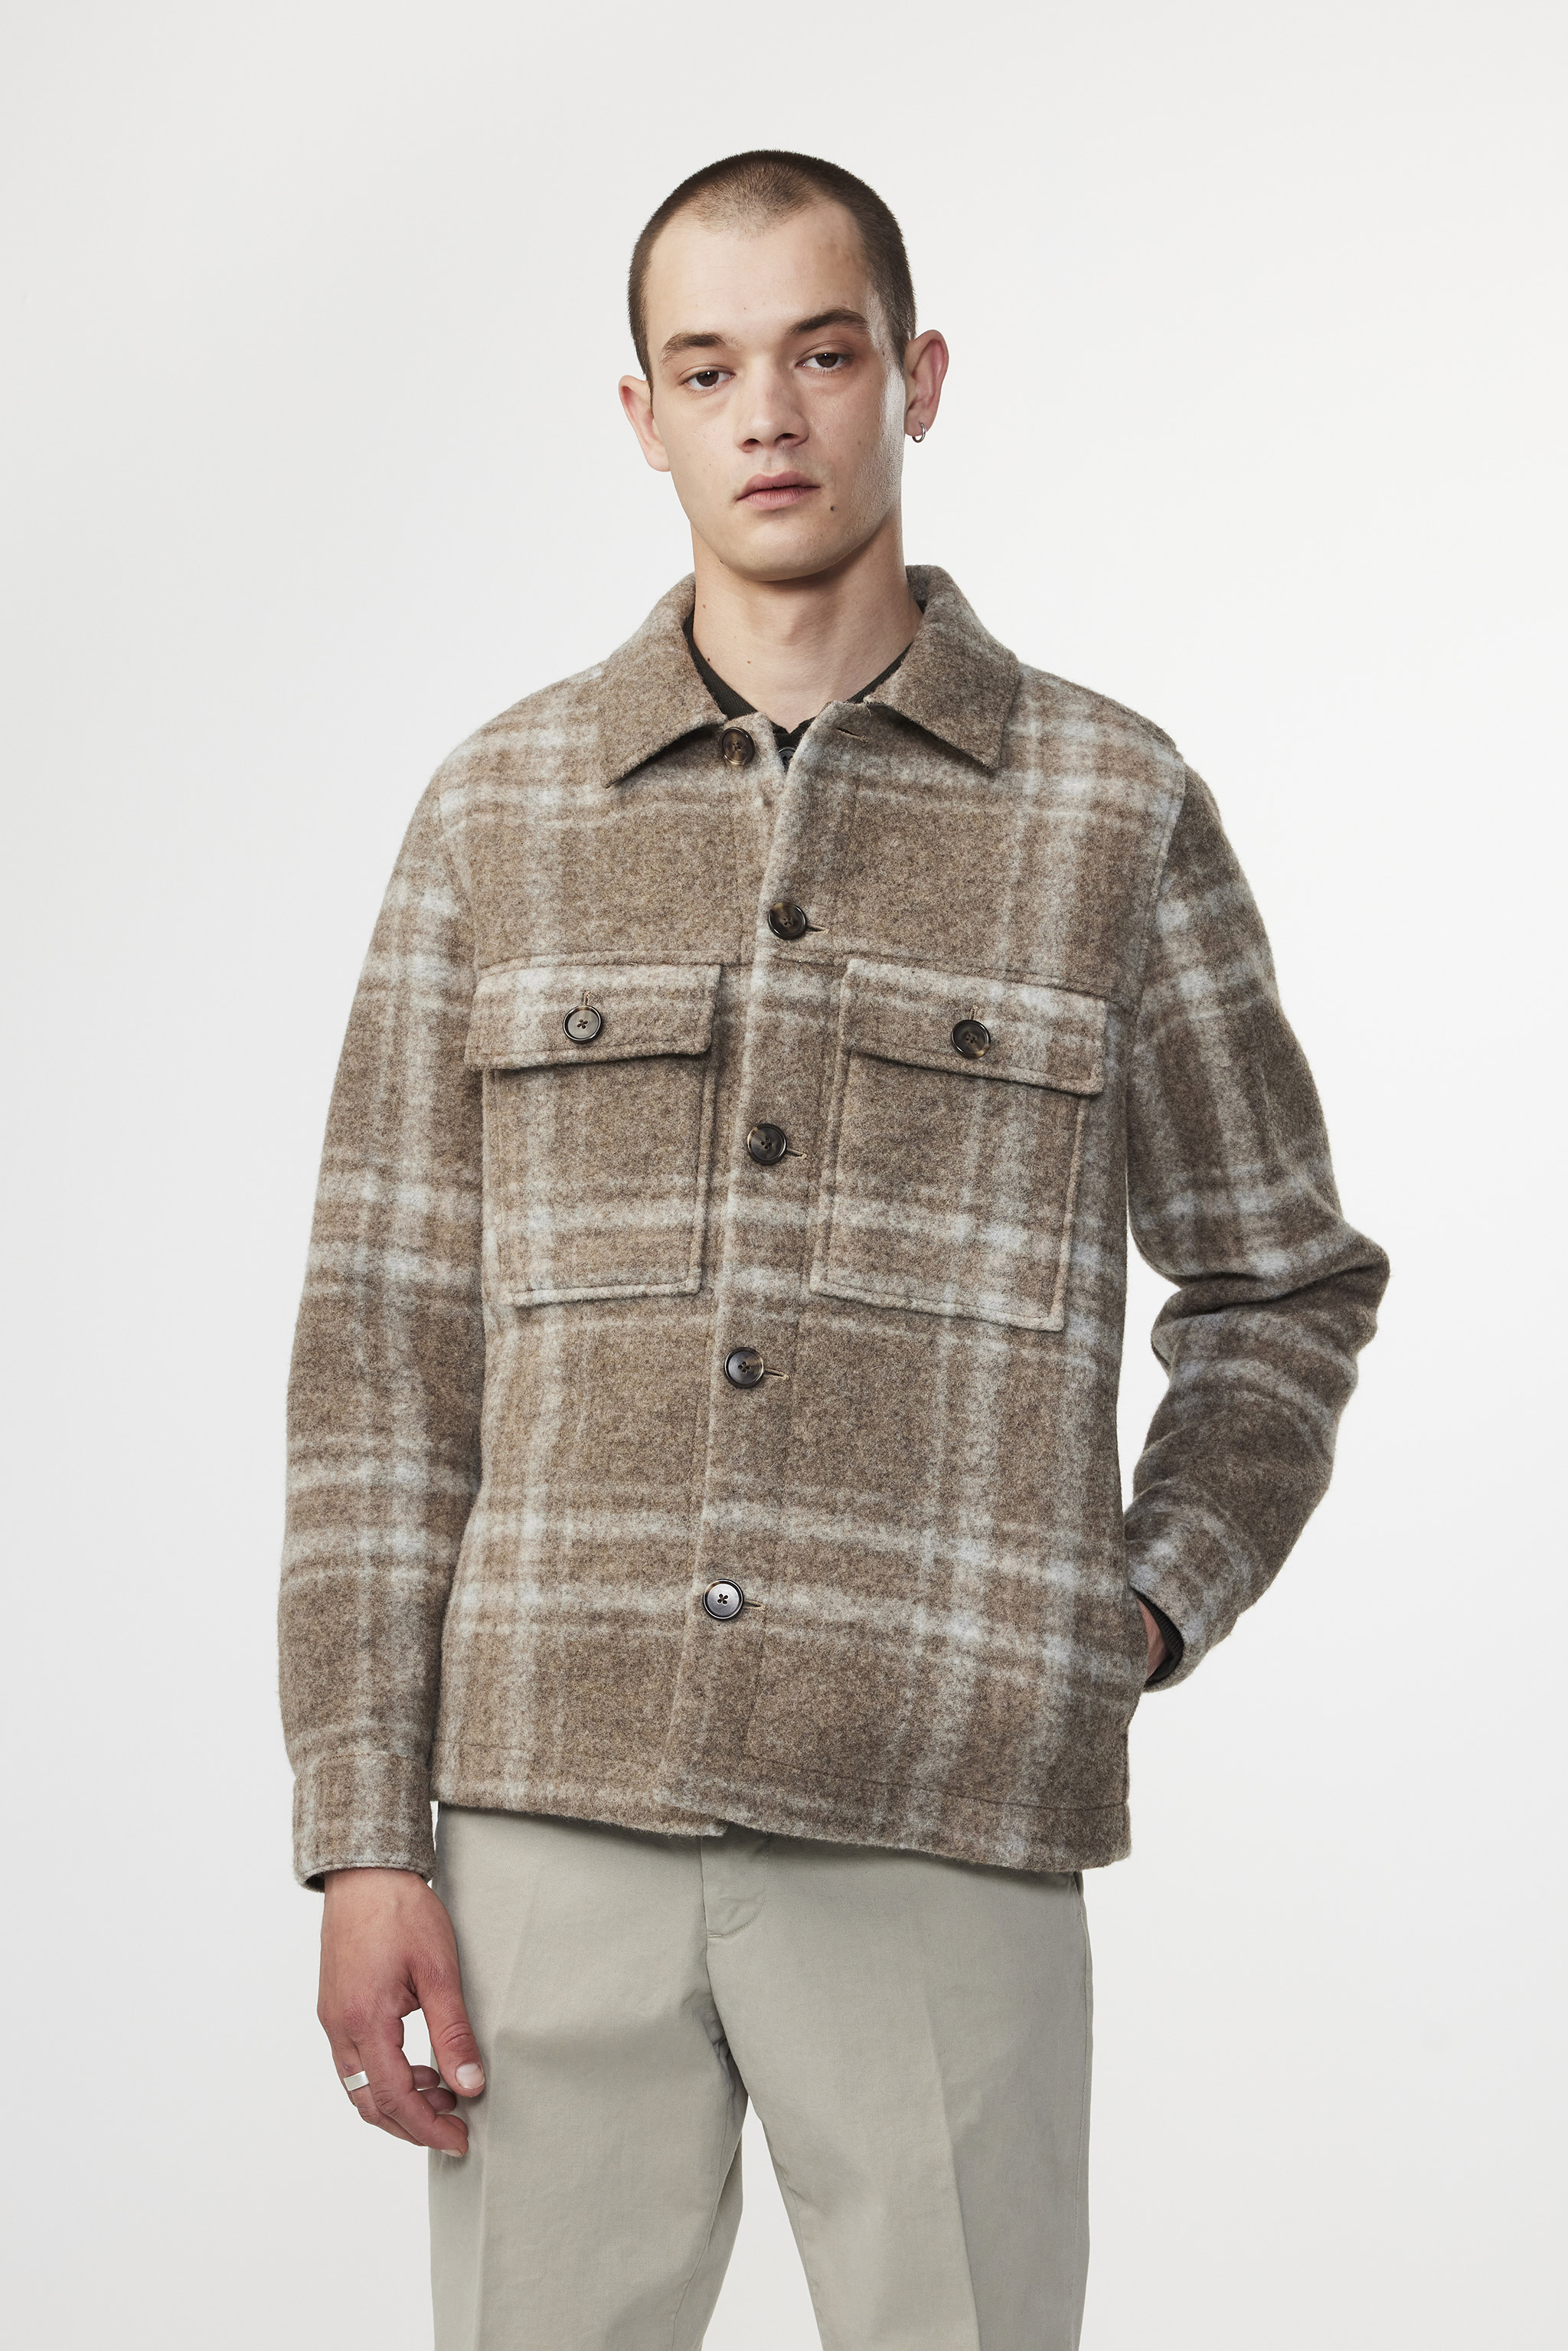 Wilas  men's jacket   Brown Check   Buy online at NN.®